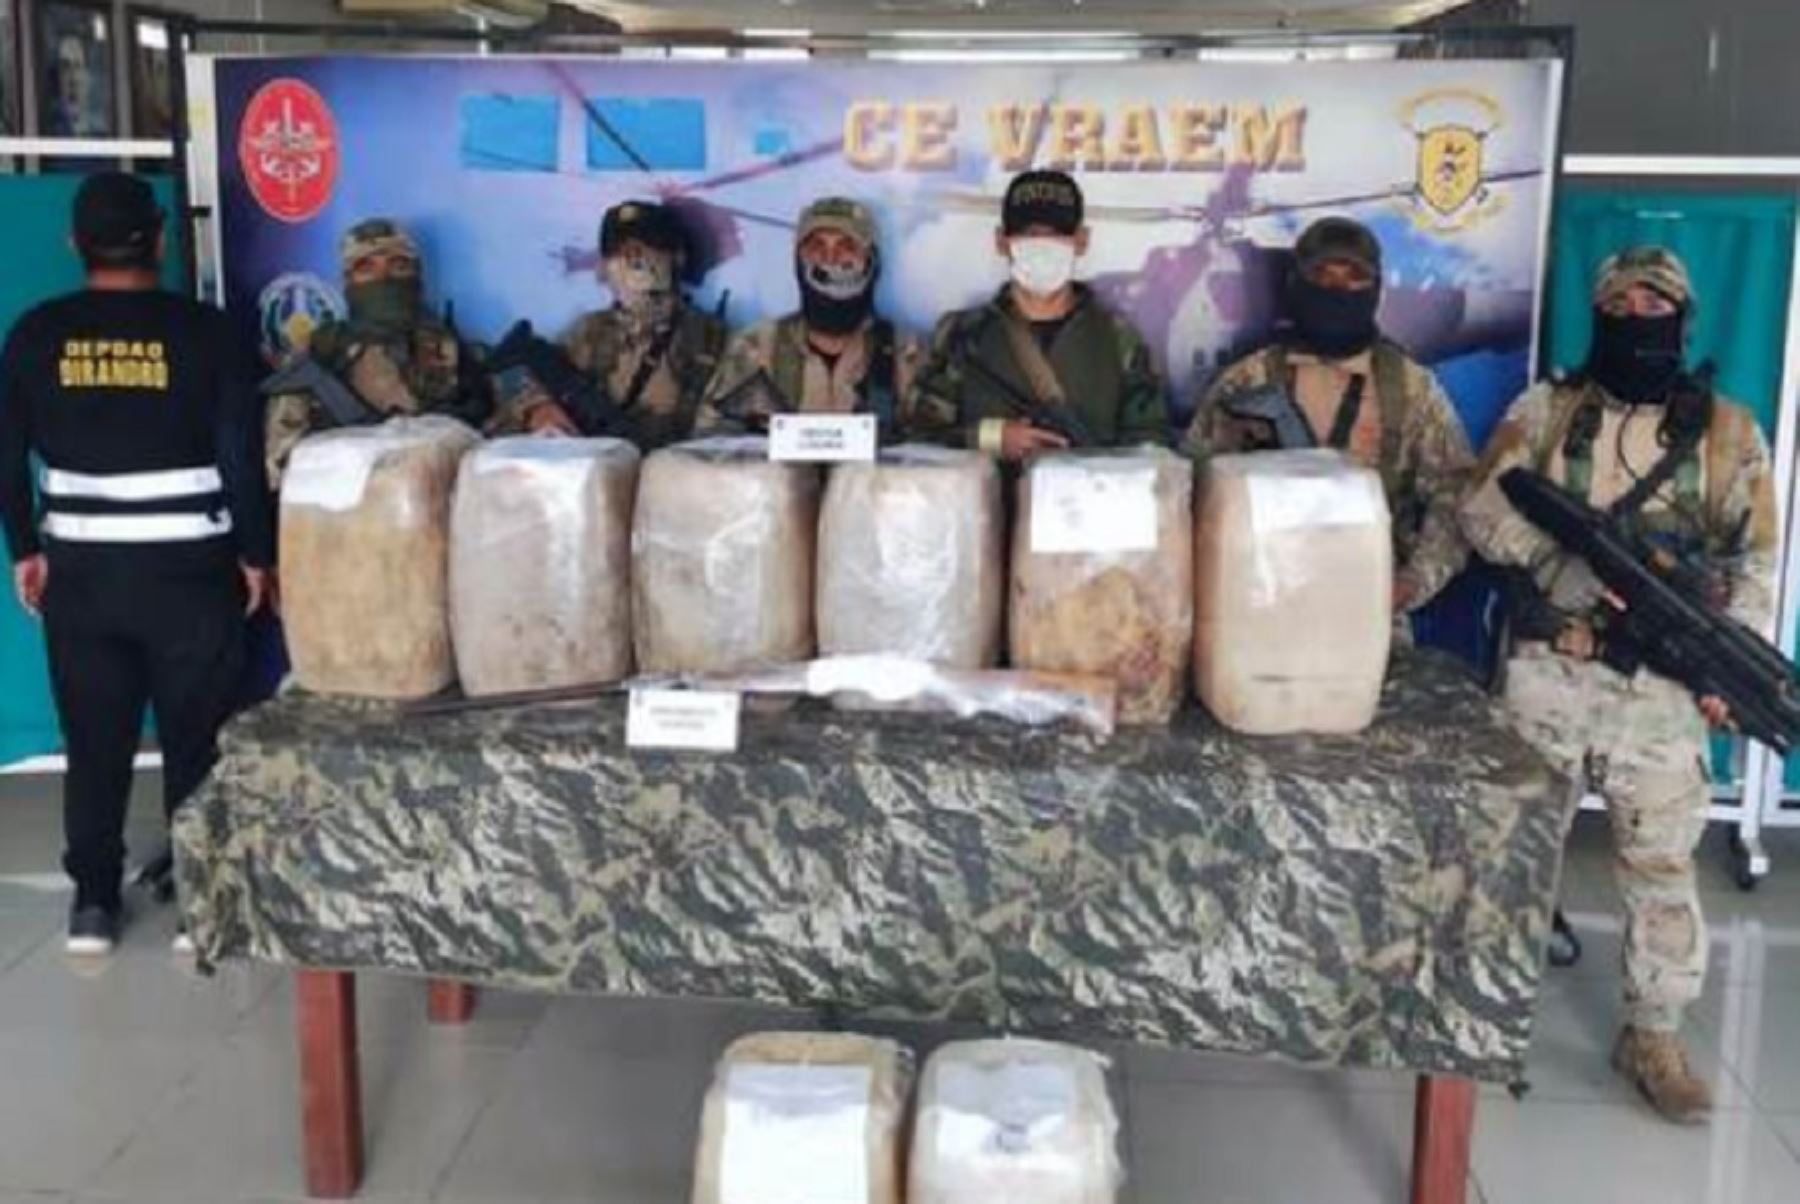 Producto de las permanentes acciones de inteligencia, la Policía Nacional del Perú (PNP) dio un duro golpe a una organización dedicada al narcotráfico, al decomisar 270 kilos de droga líquida en el centro poblado de Mayapo, en el 
distrito de Llochegua, provincia de Huanta, región Ayacucho.